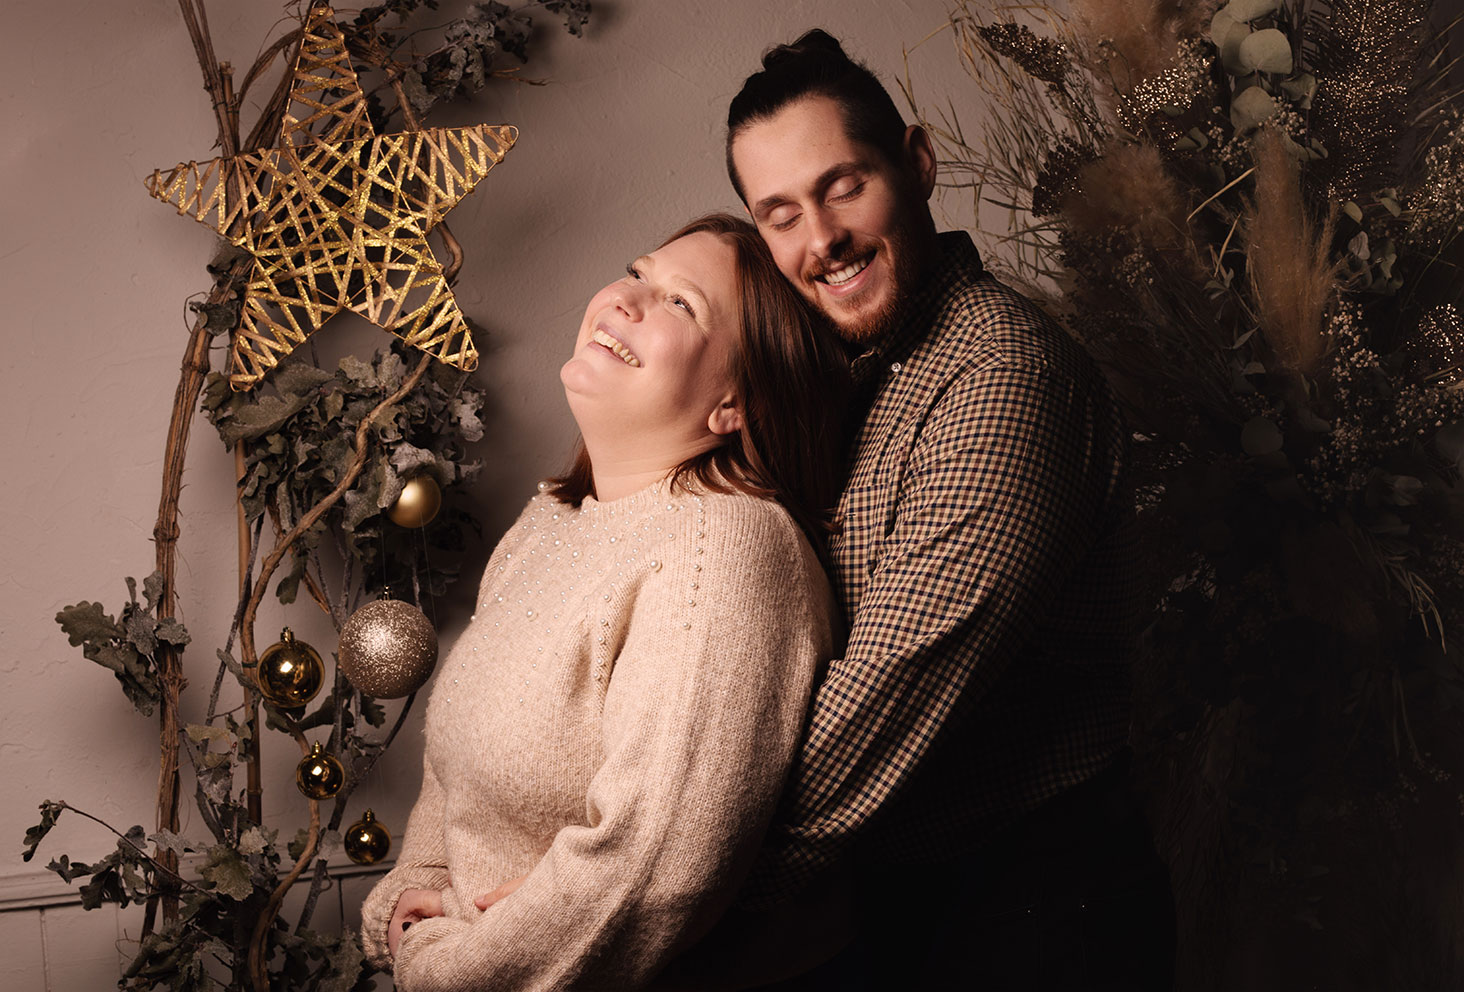 Shooting studio de Noël en couple dans un décor naturel et doré pour les 7 ans du blog